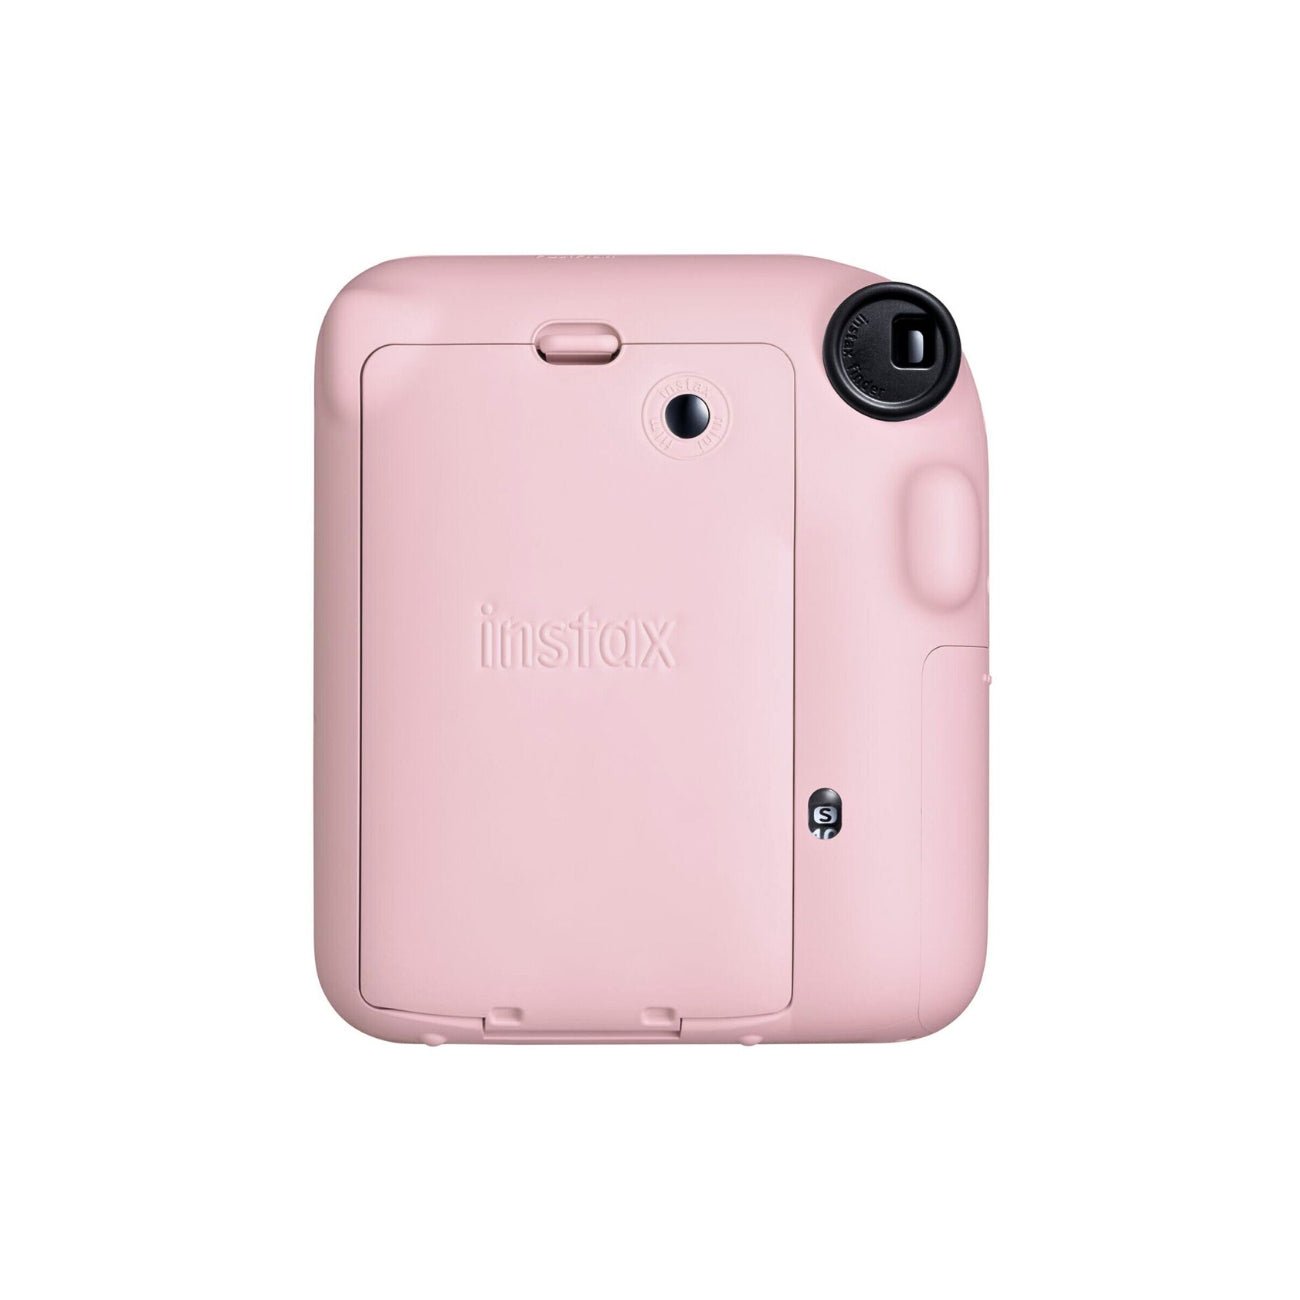 Fujifilm INSTAX Mini 12 Instant Film Camera (Pink) - Rear view